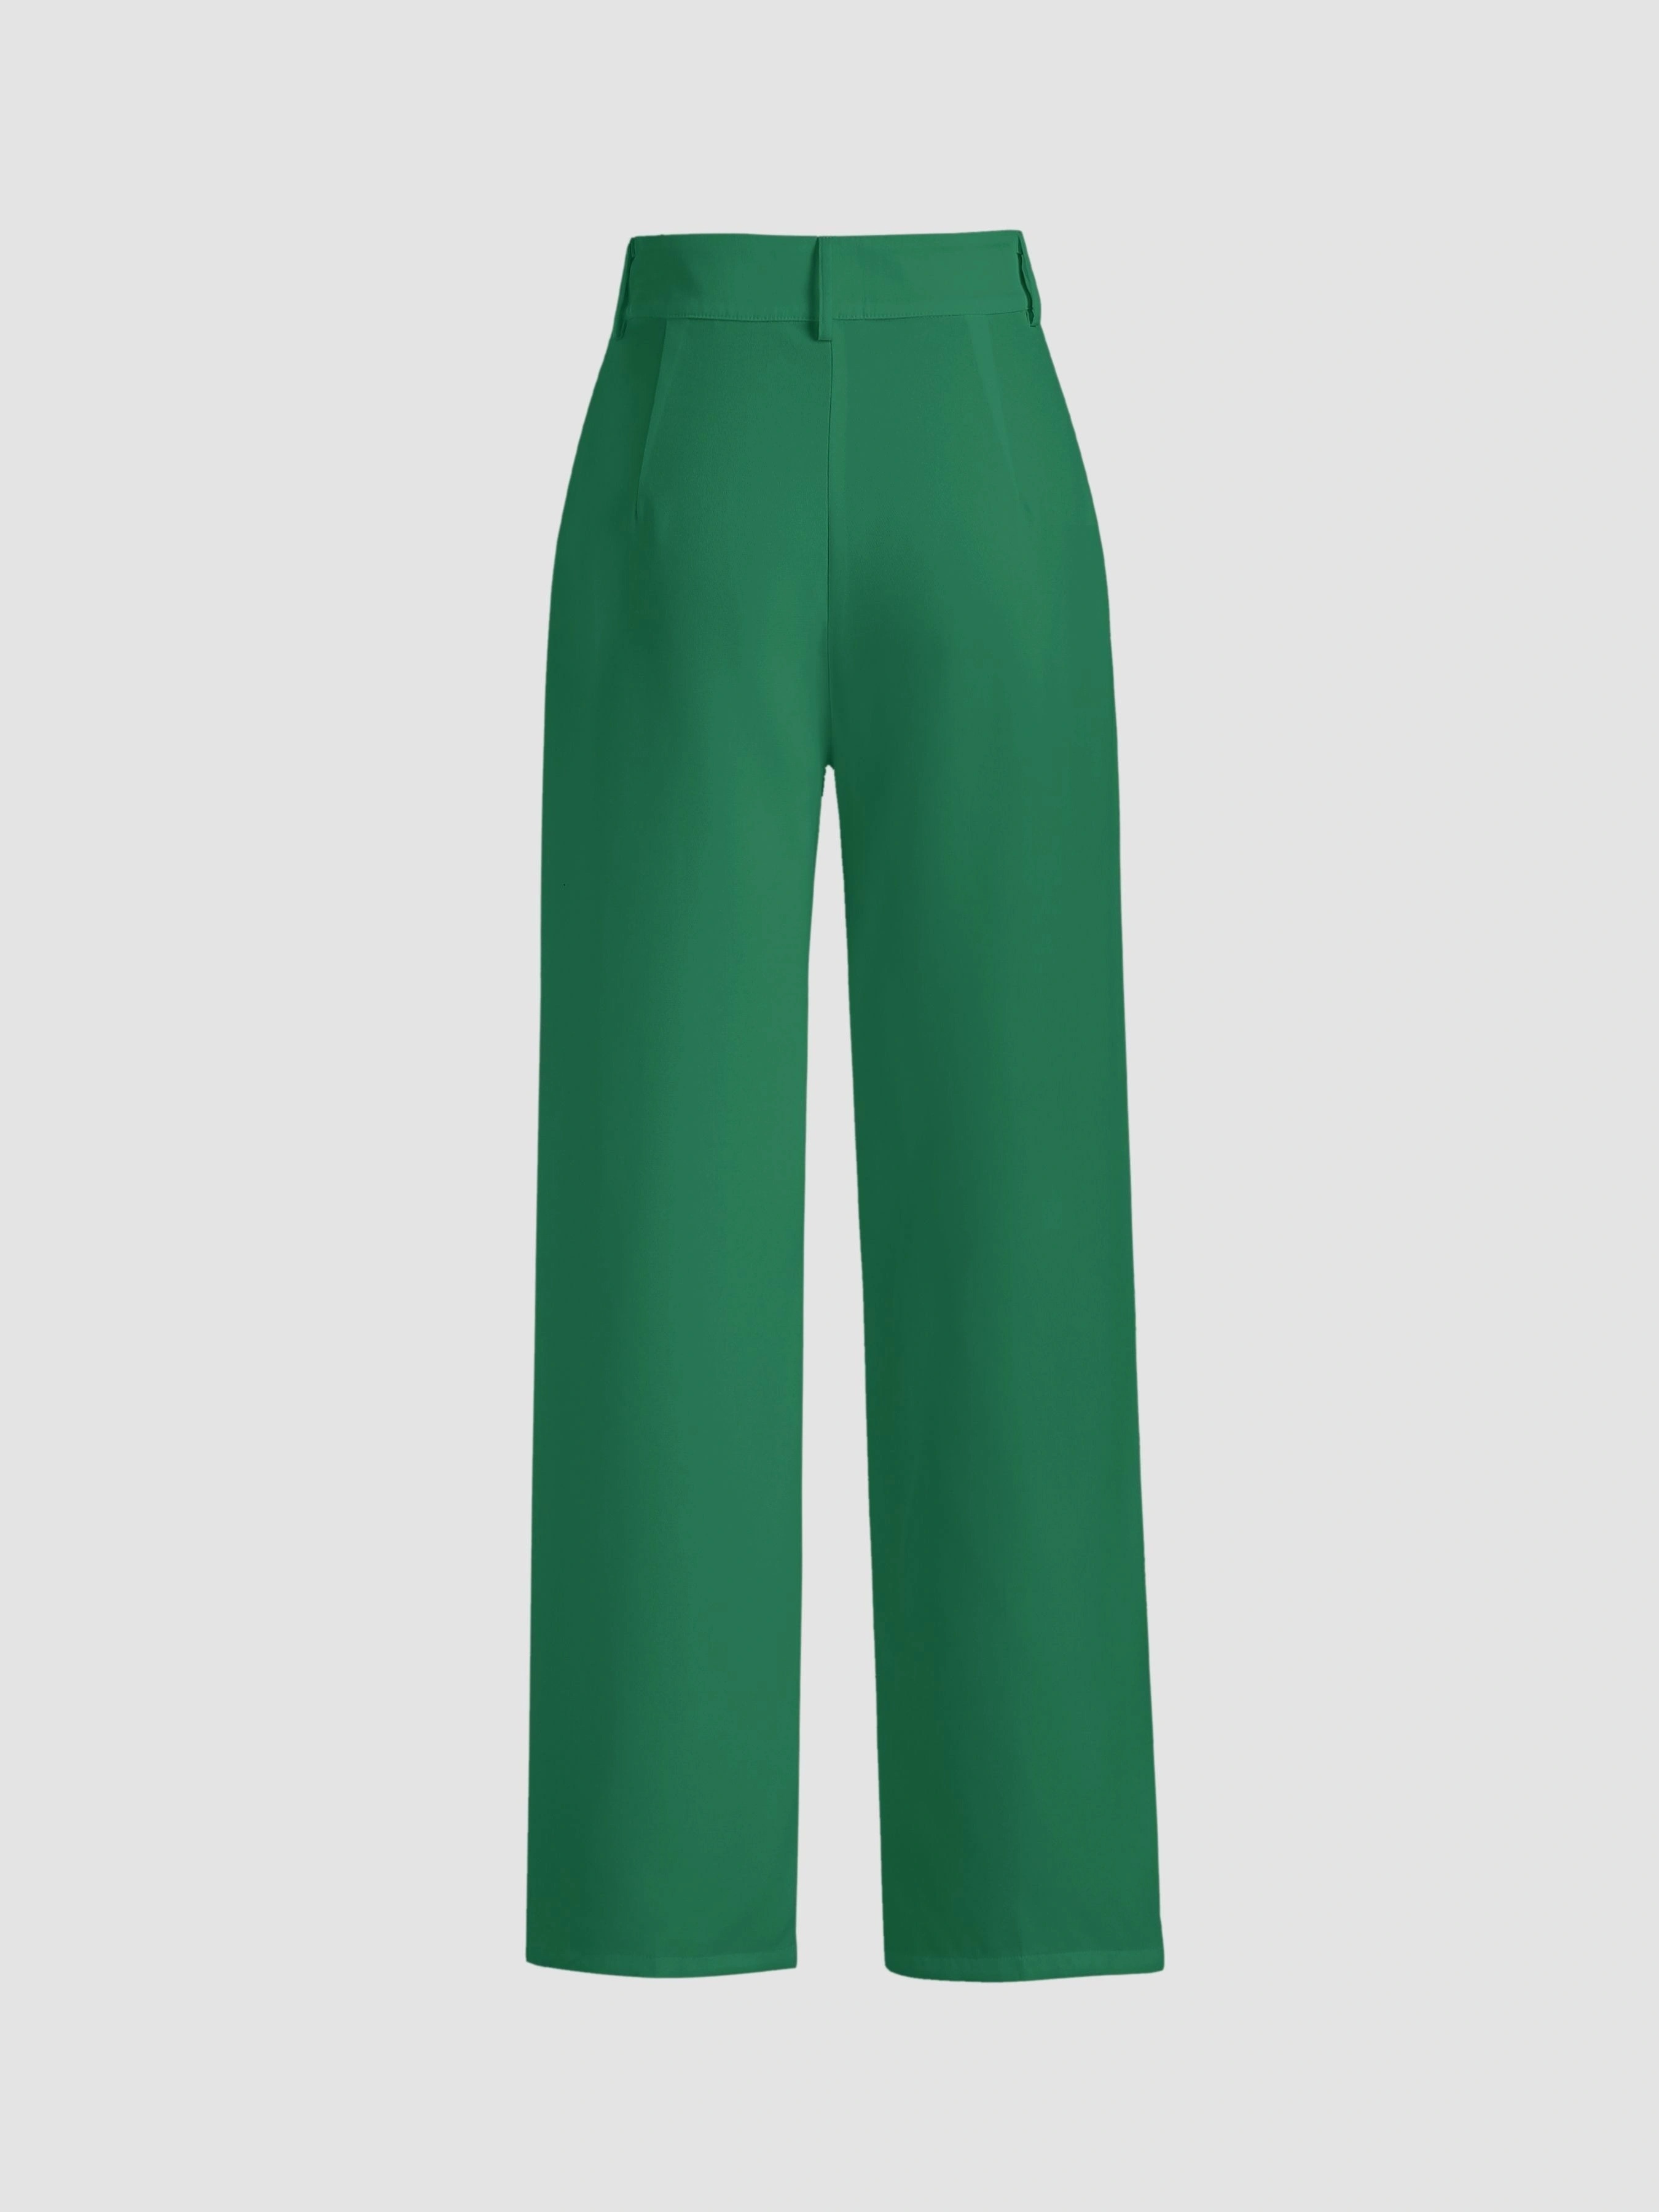 Dark Green Solid High Waist Women's Suit Pants 